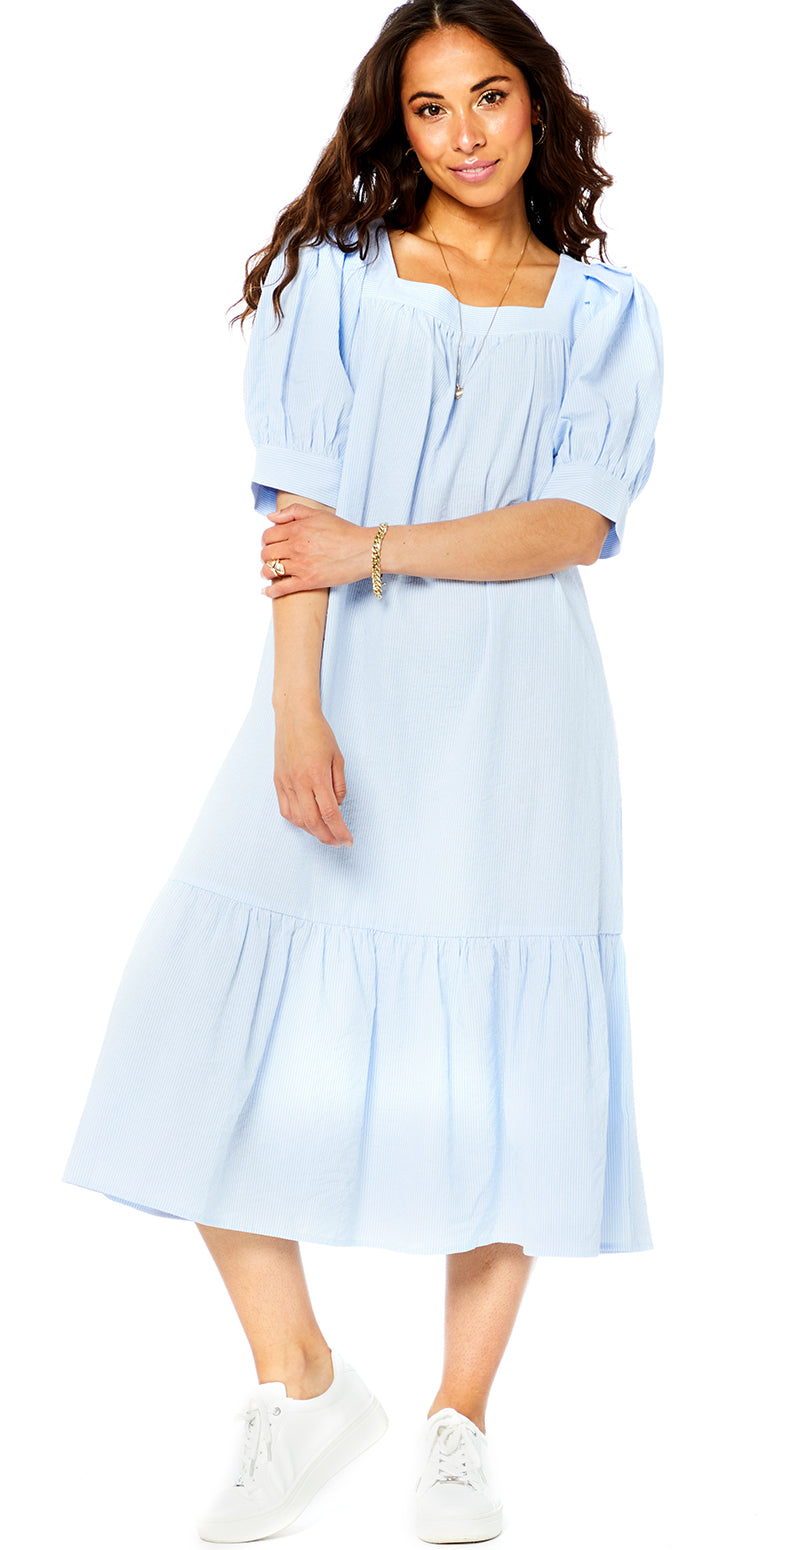 Lang kjole med striber lysblå